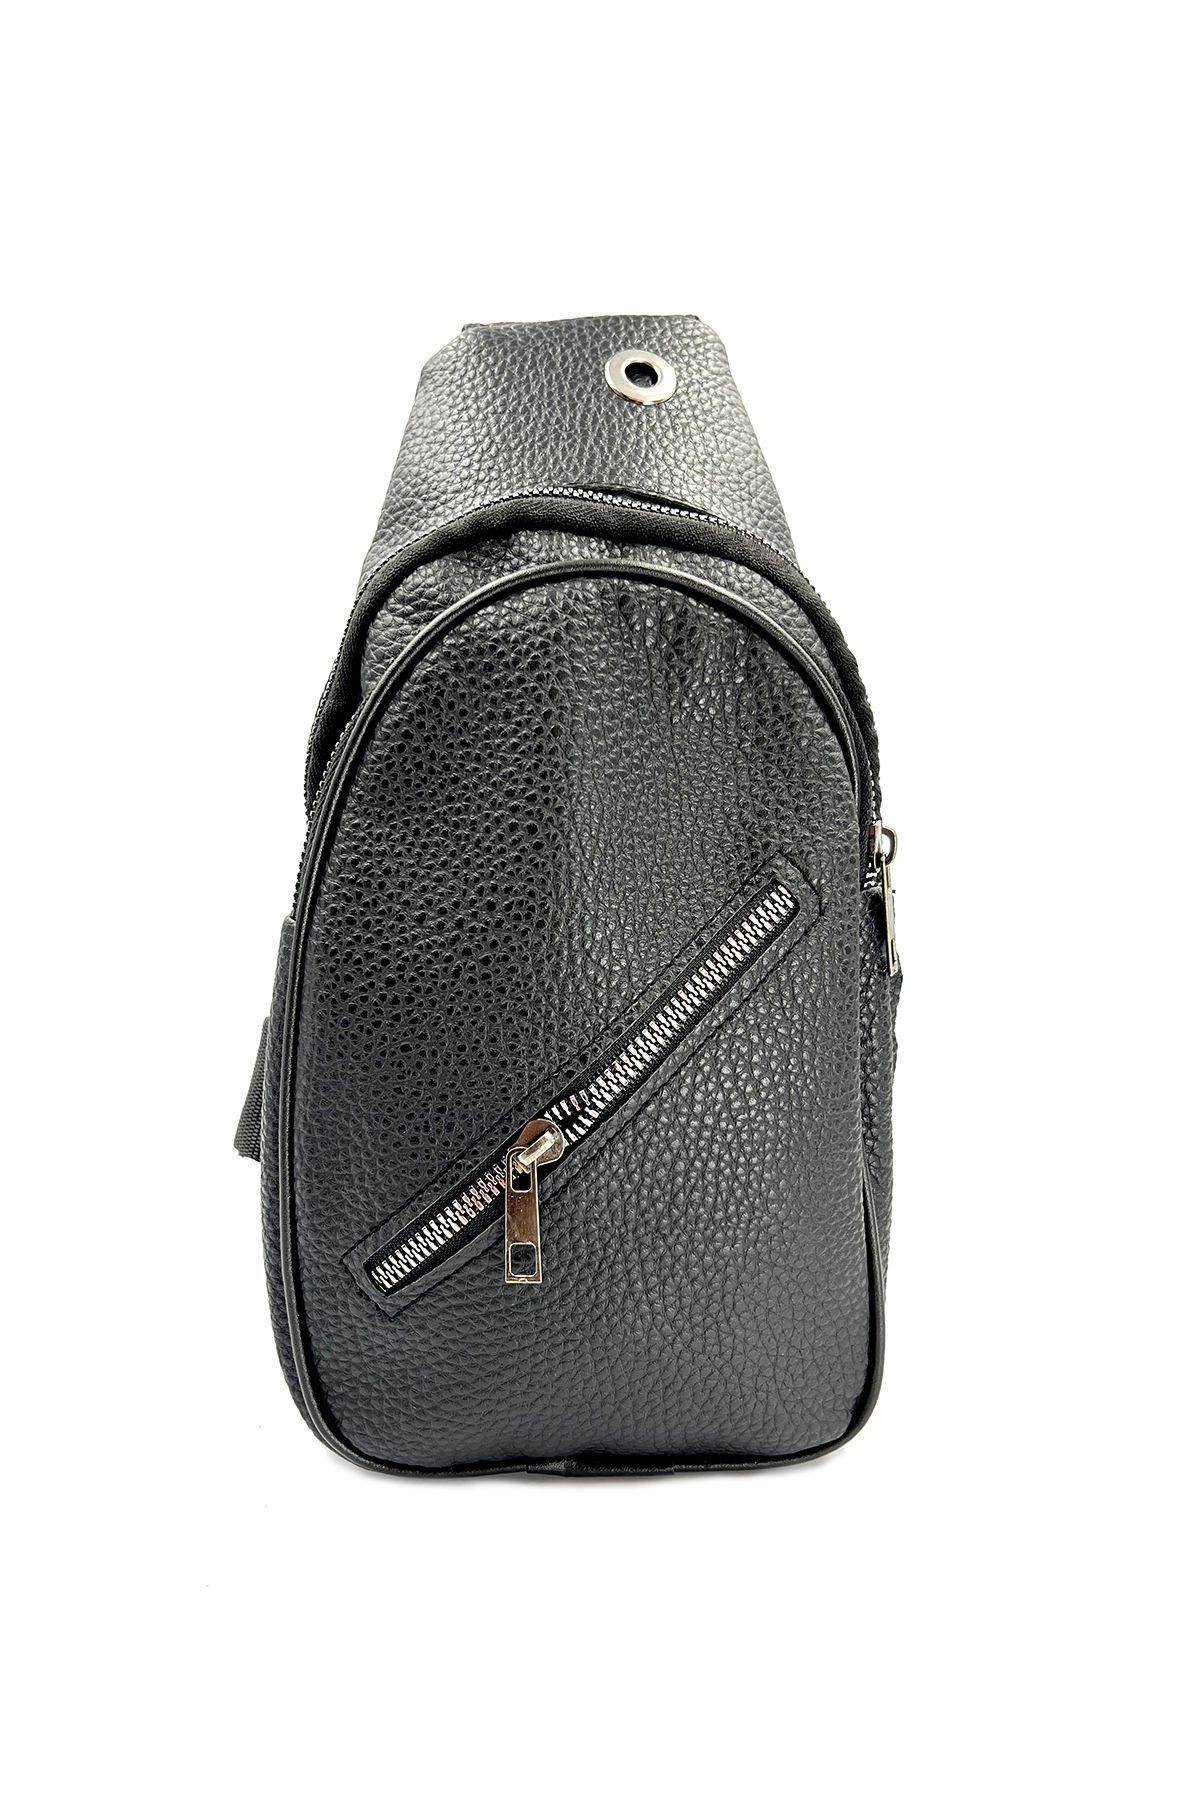 Onouqo 30 * 18 cm - Üç Gözlü - Siyah Renk - Günlük - Unisex Deri Body Bag Çanta